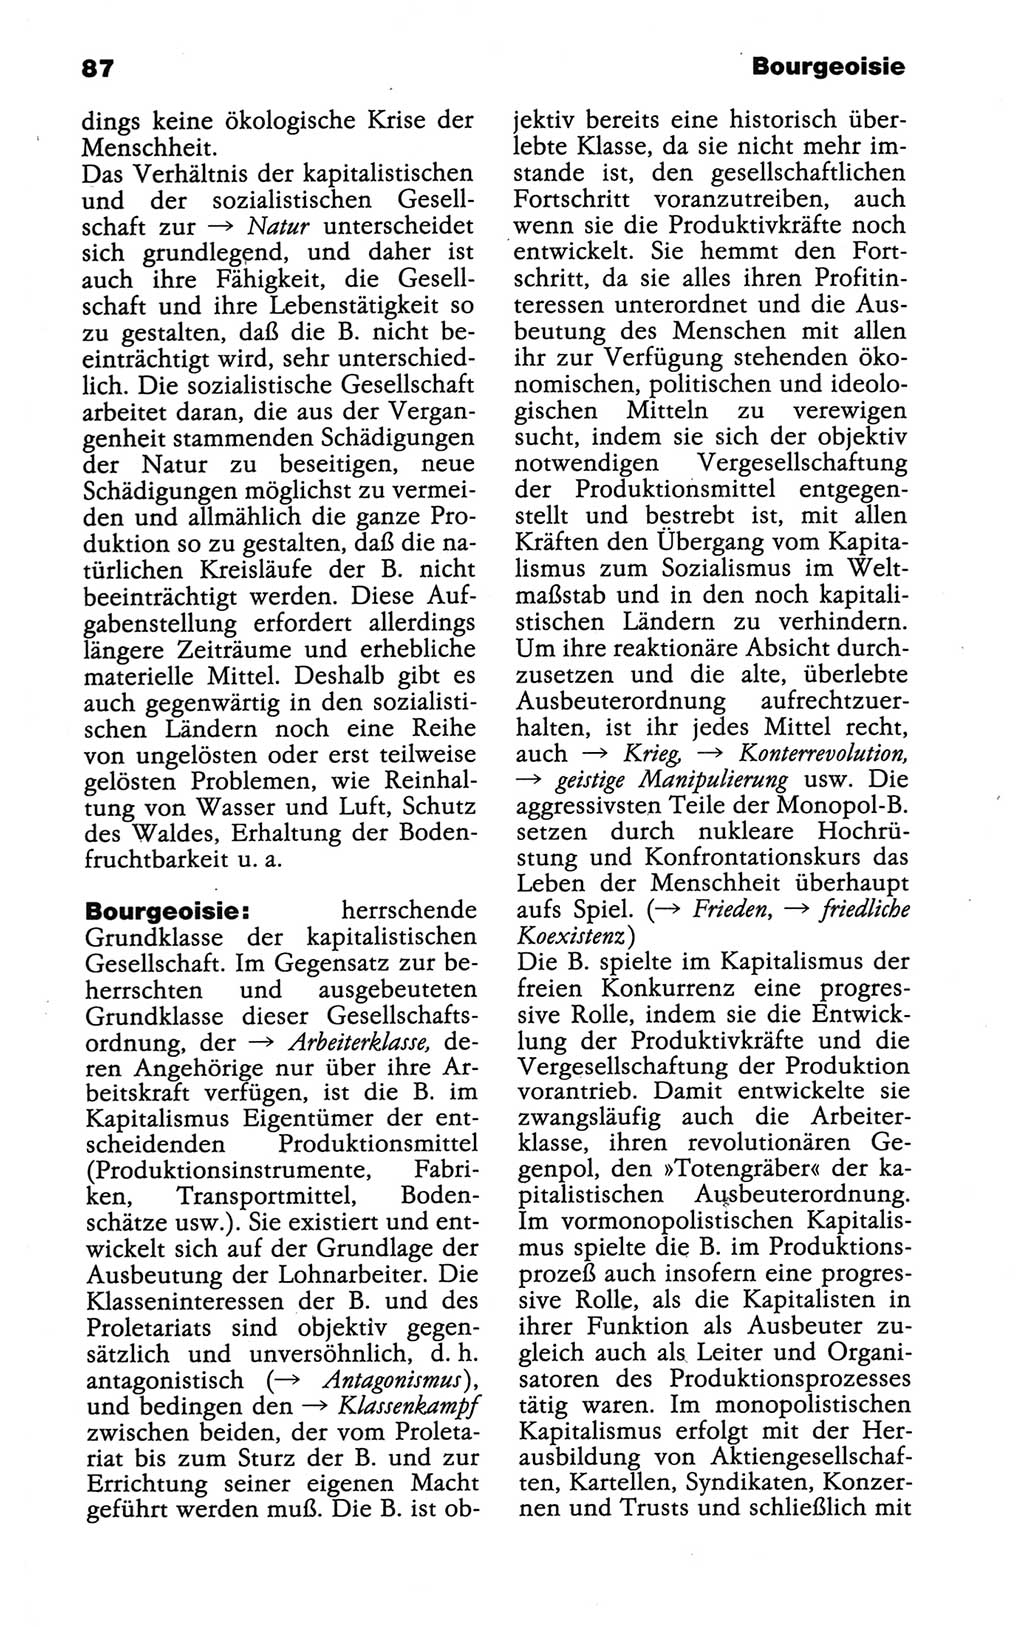 Wörterbuch der marxistisch-leninistischen Philosophie [Deutsche Demokratische Republik (DDR)] 1986, Seite 87 (Wb. ML Phil. DDR 1986, S. 87)